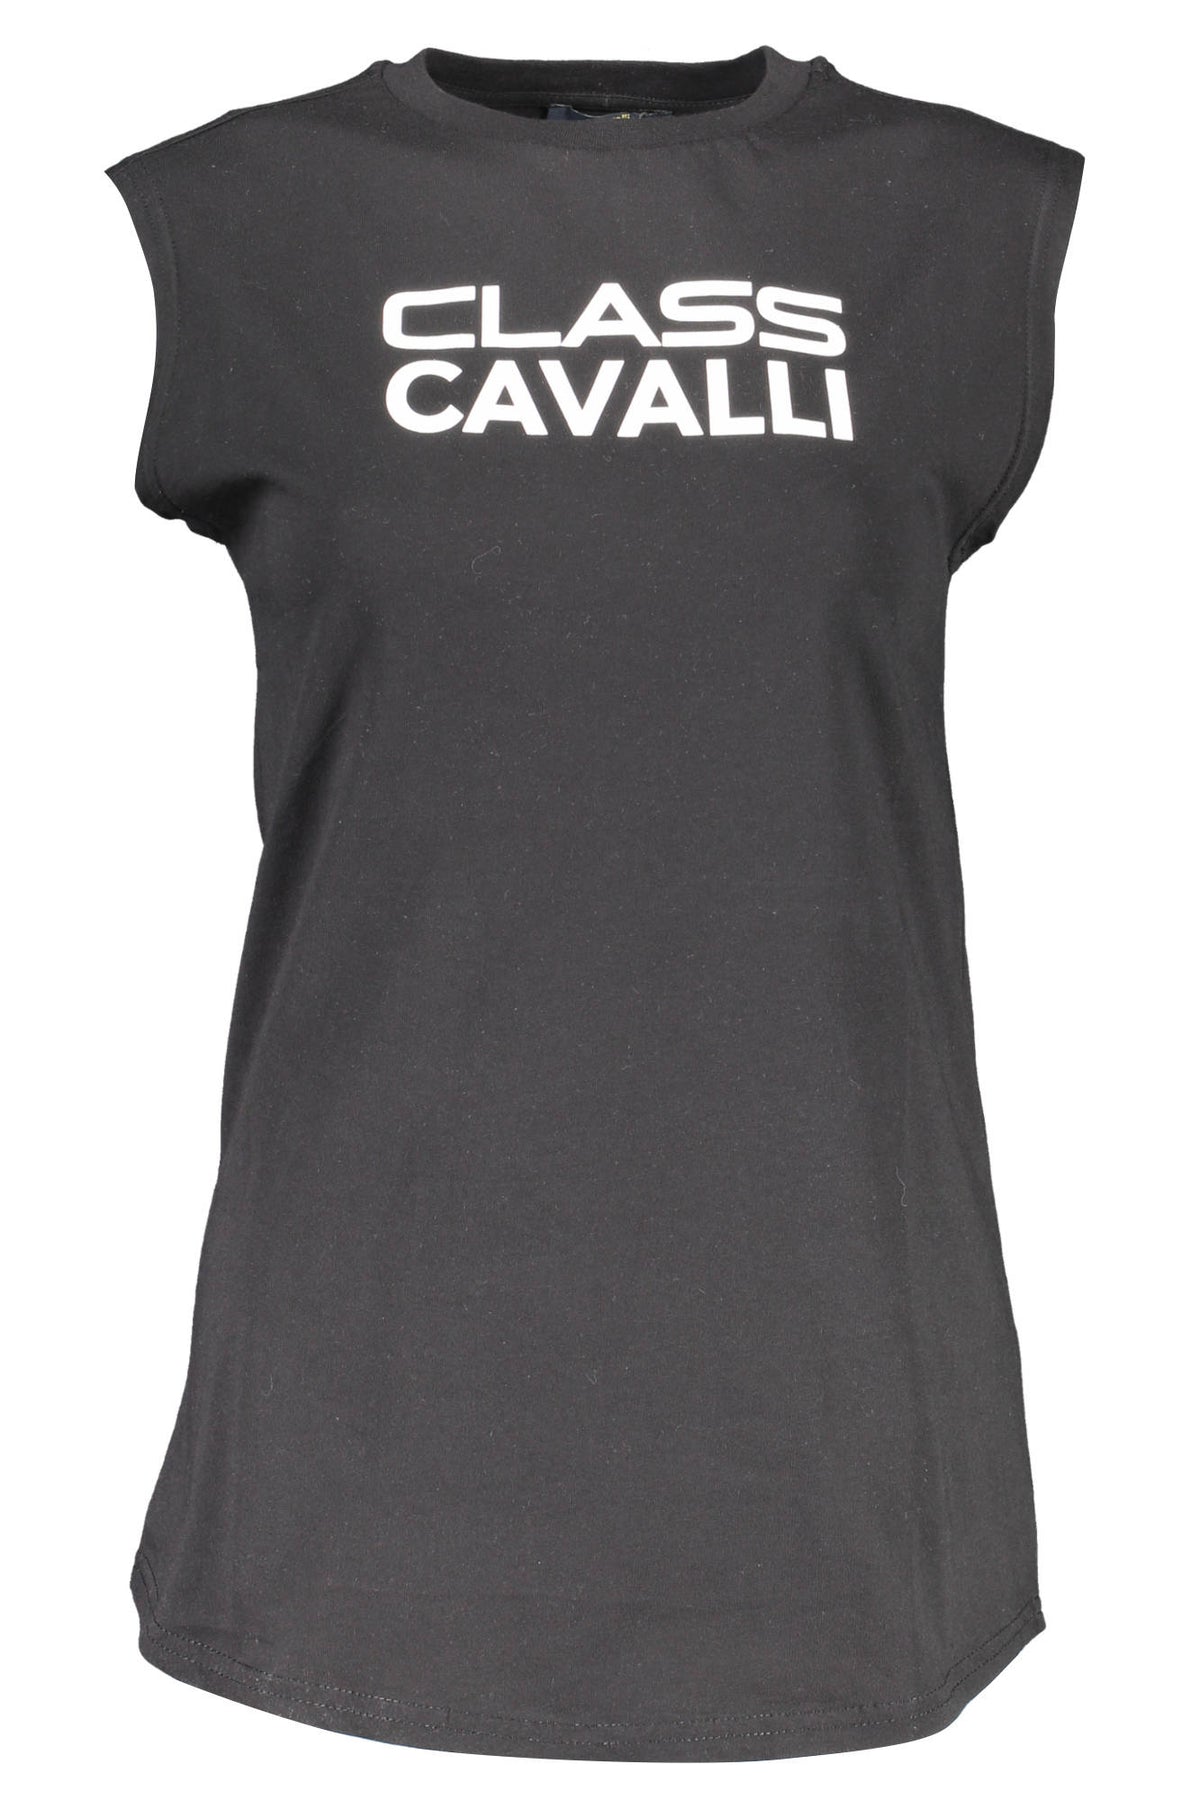 CAVALLI CLASS Damen Top T-Shirts Shirt Oberteil mit Rundhalsausschnitt, ärmellos